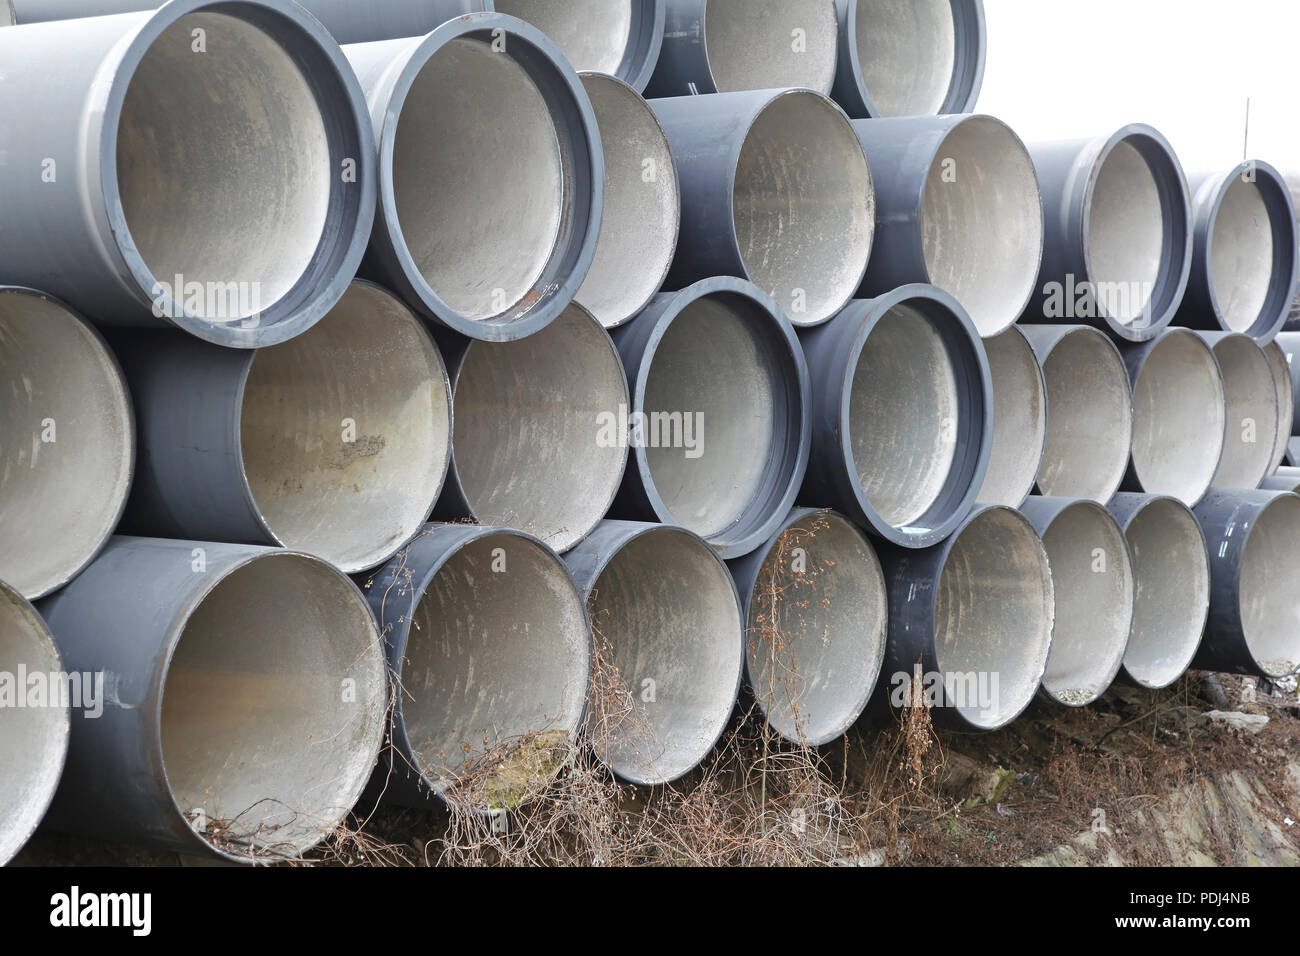 Big ceramic sewage pipes ready for underground instalation Stock Photo